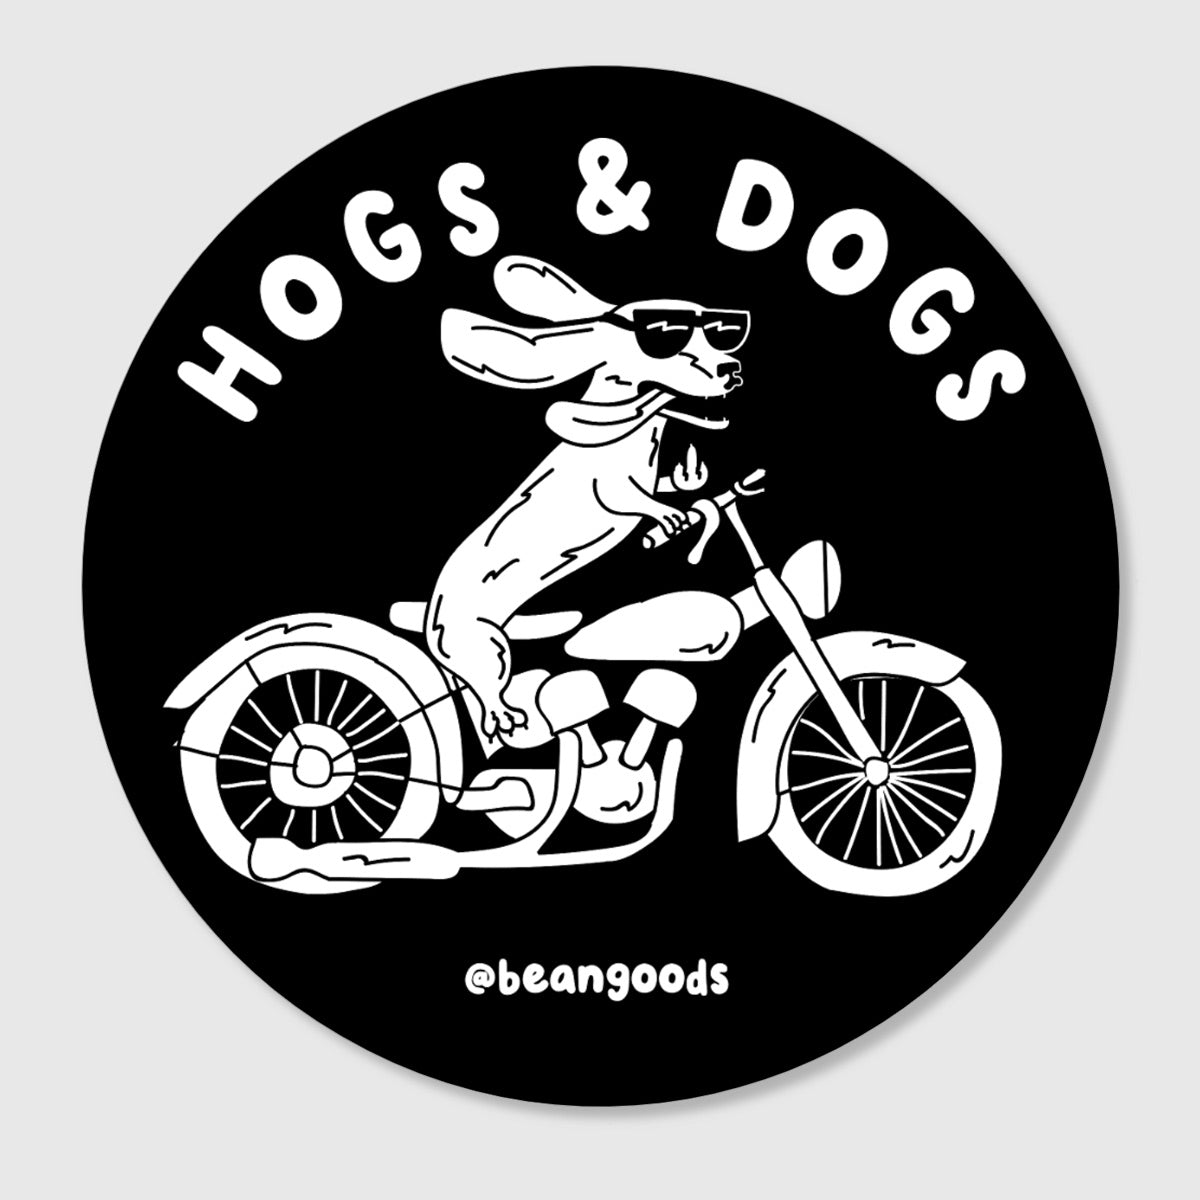 hogs & dogs sticker - bean goods